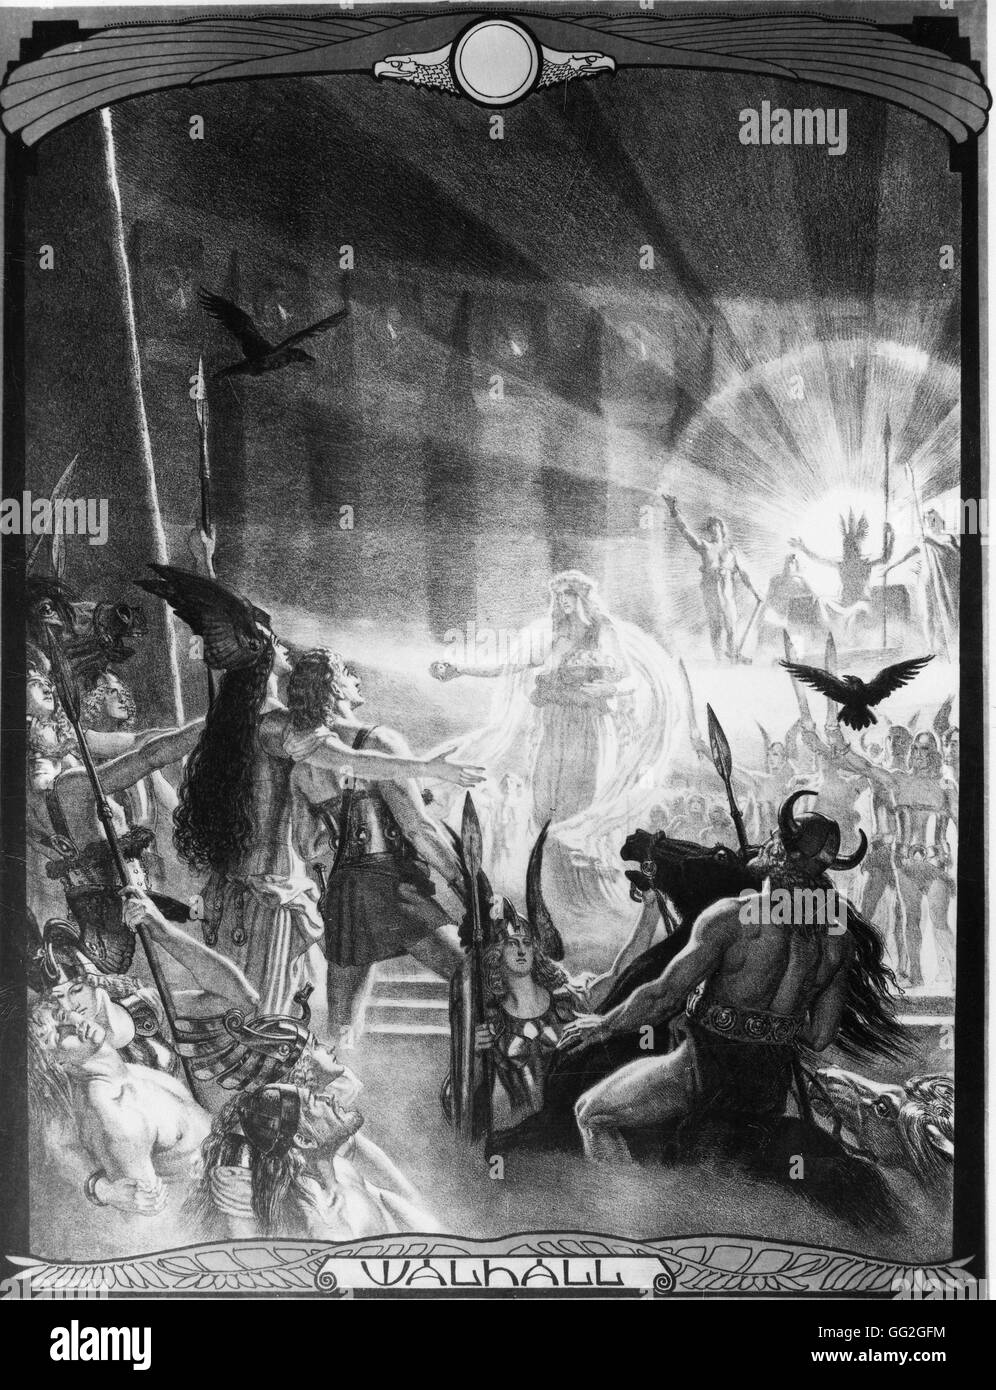 Franz Stassen deutsche Schule der "Walküre" 1914 für eine Reihe von Illustrationen für Wagners "Das Rheingold". 24 Lithographien Weise & Co. Verlag, Berlin erschienen. Originalgröße: 80 x 60 cm Stockfoto